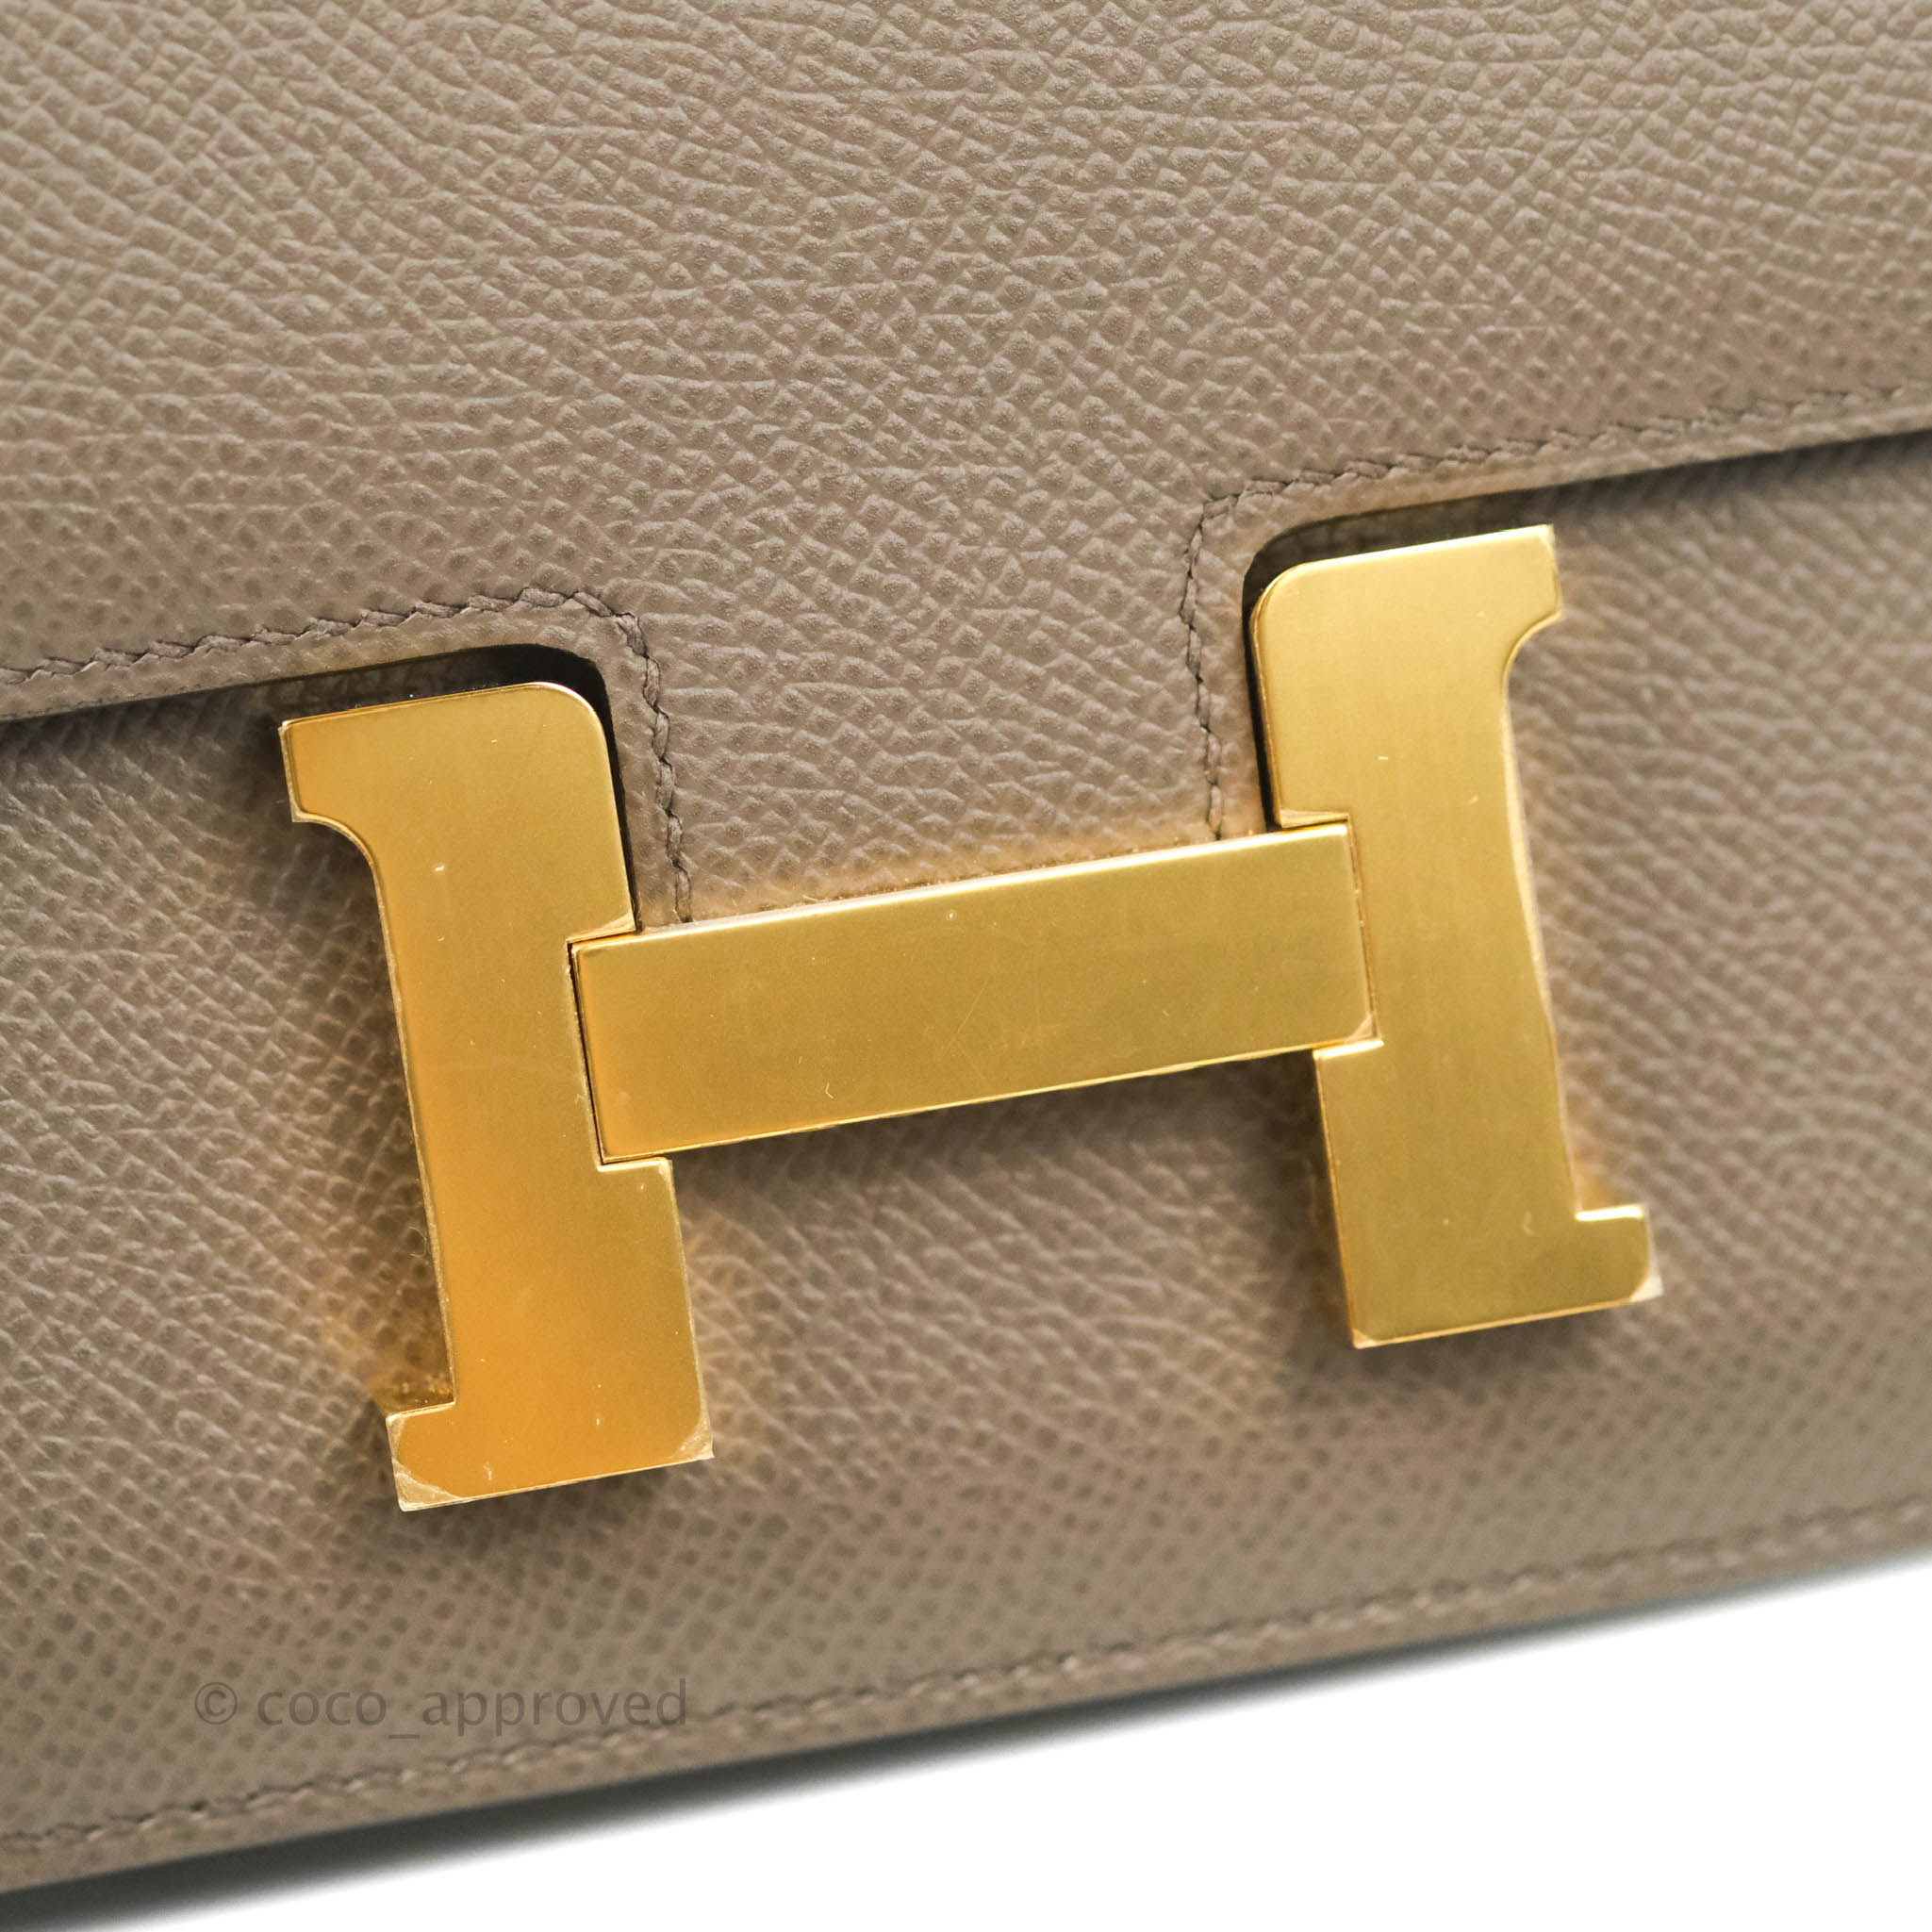 Hermes Constance 24 Etain Epsom leather Rose gold hardware